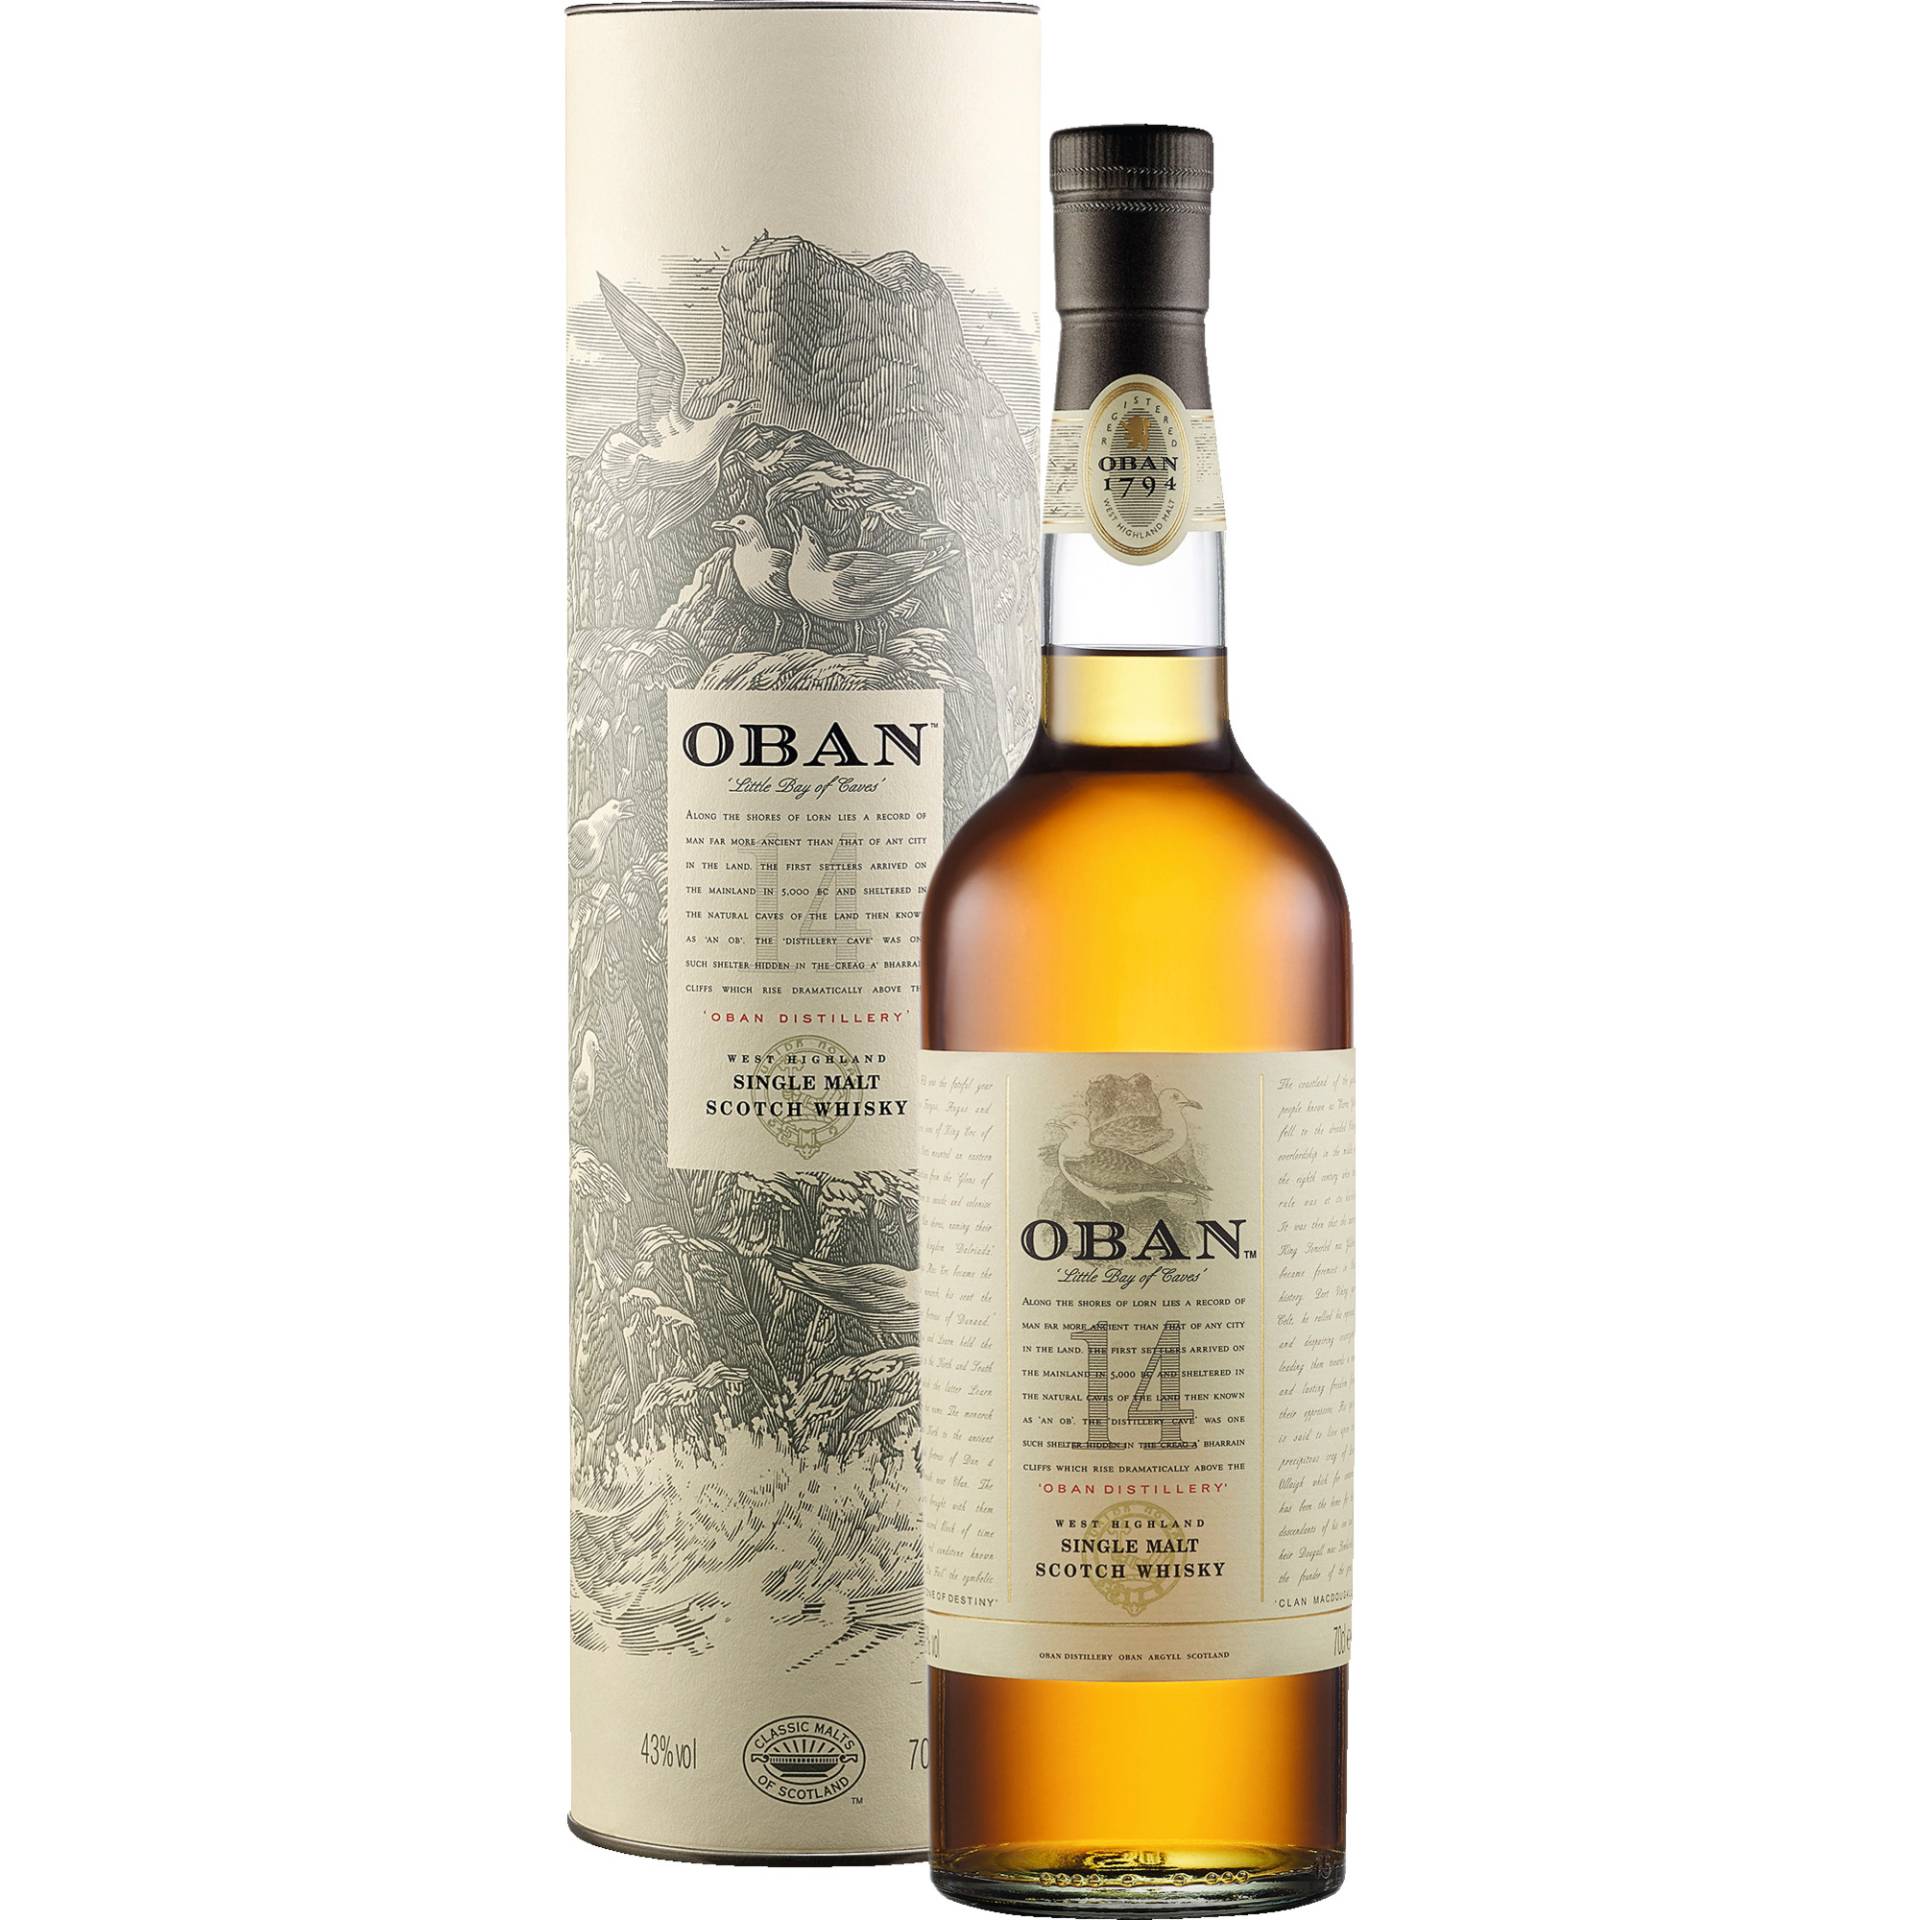 Oban Highland Single Malt Scotch Whisky 14 Years, 43 % vol. 0,7 L, Schottland, Spirituosen von Oban Distillery, Stafford St, Oban PA34 5NH, Scotland, GB